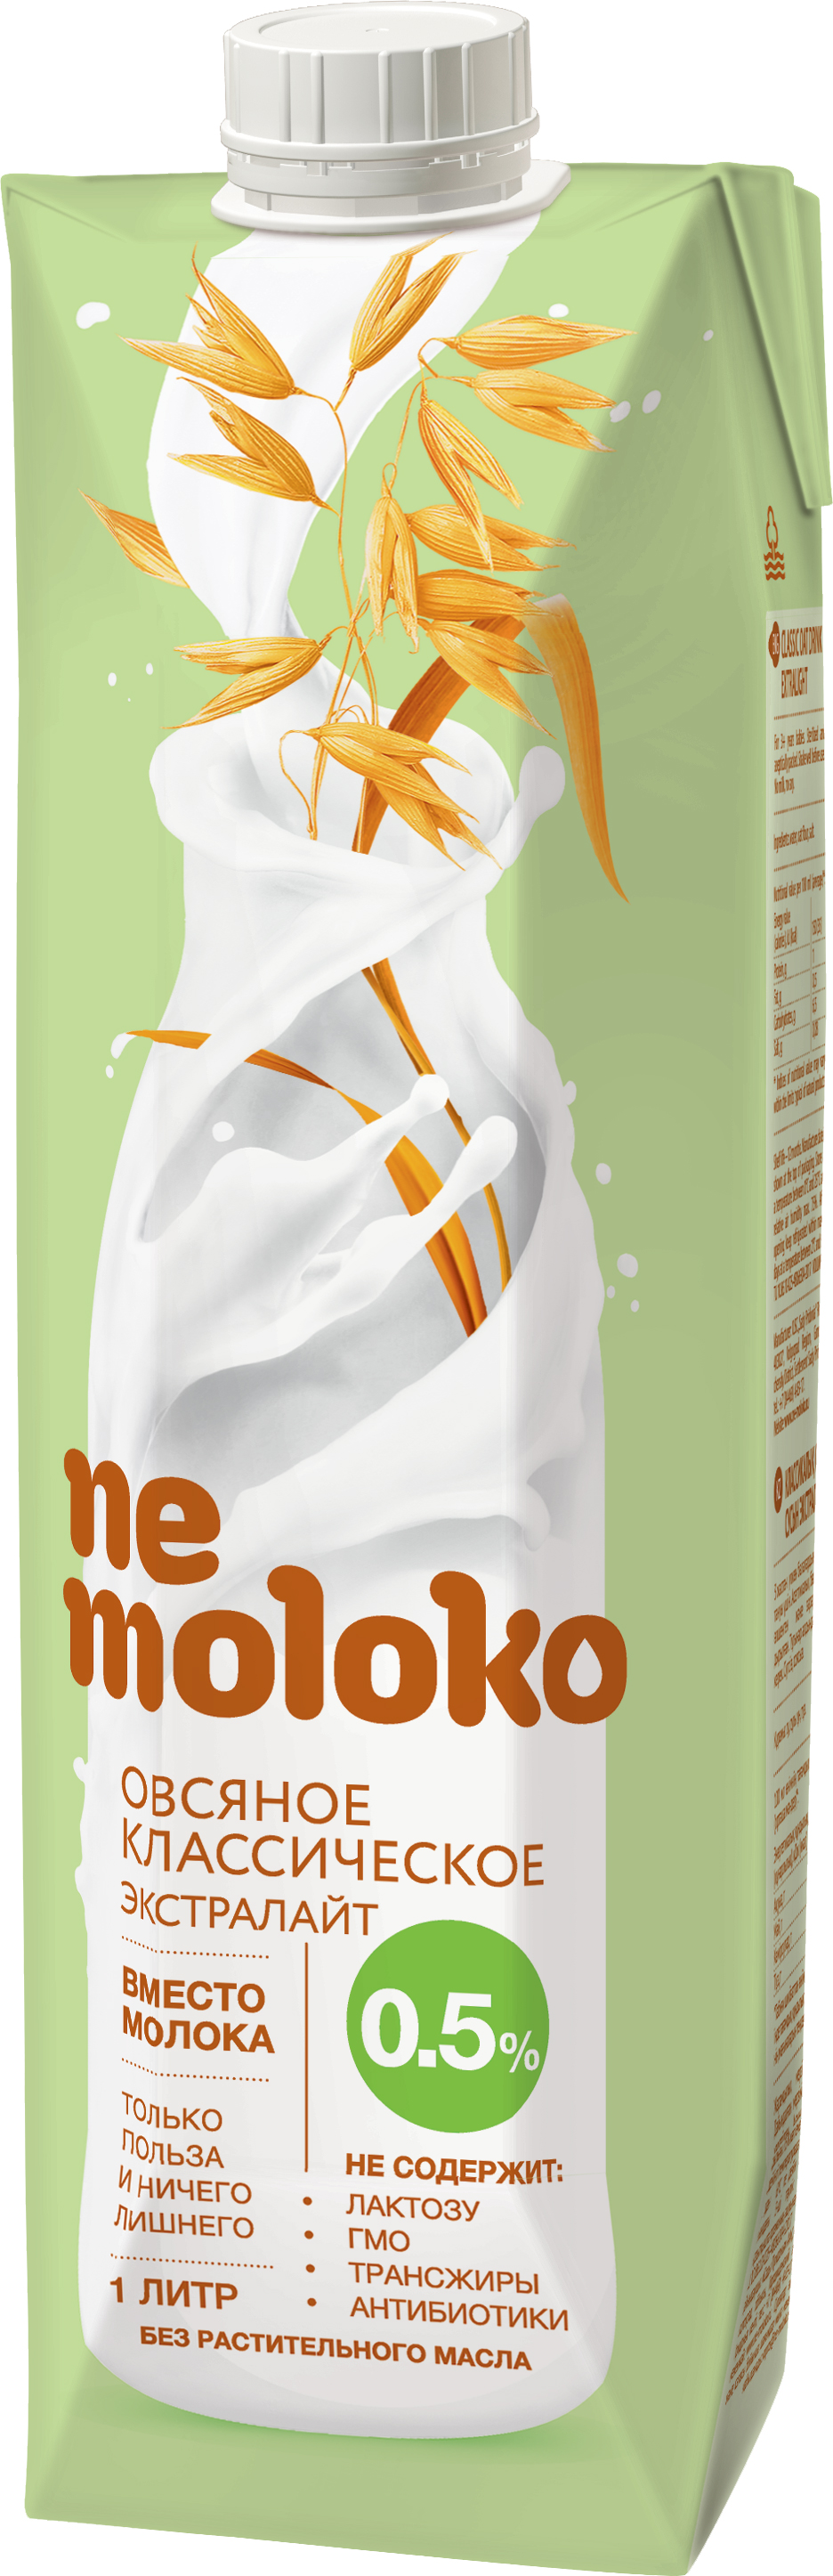 Напиток Немолоко овсяный экстралайт 0.5% 1л т/п